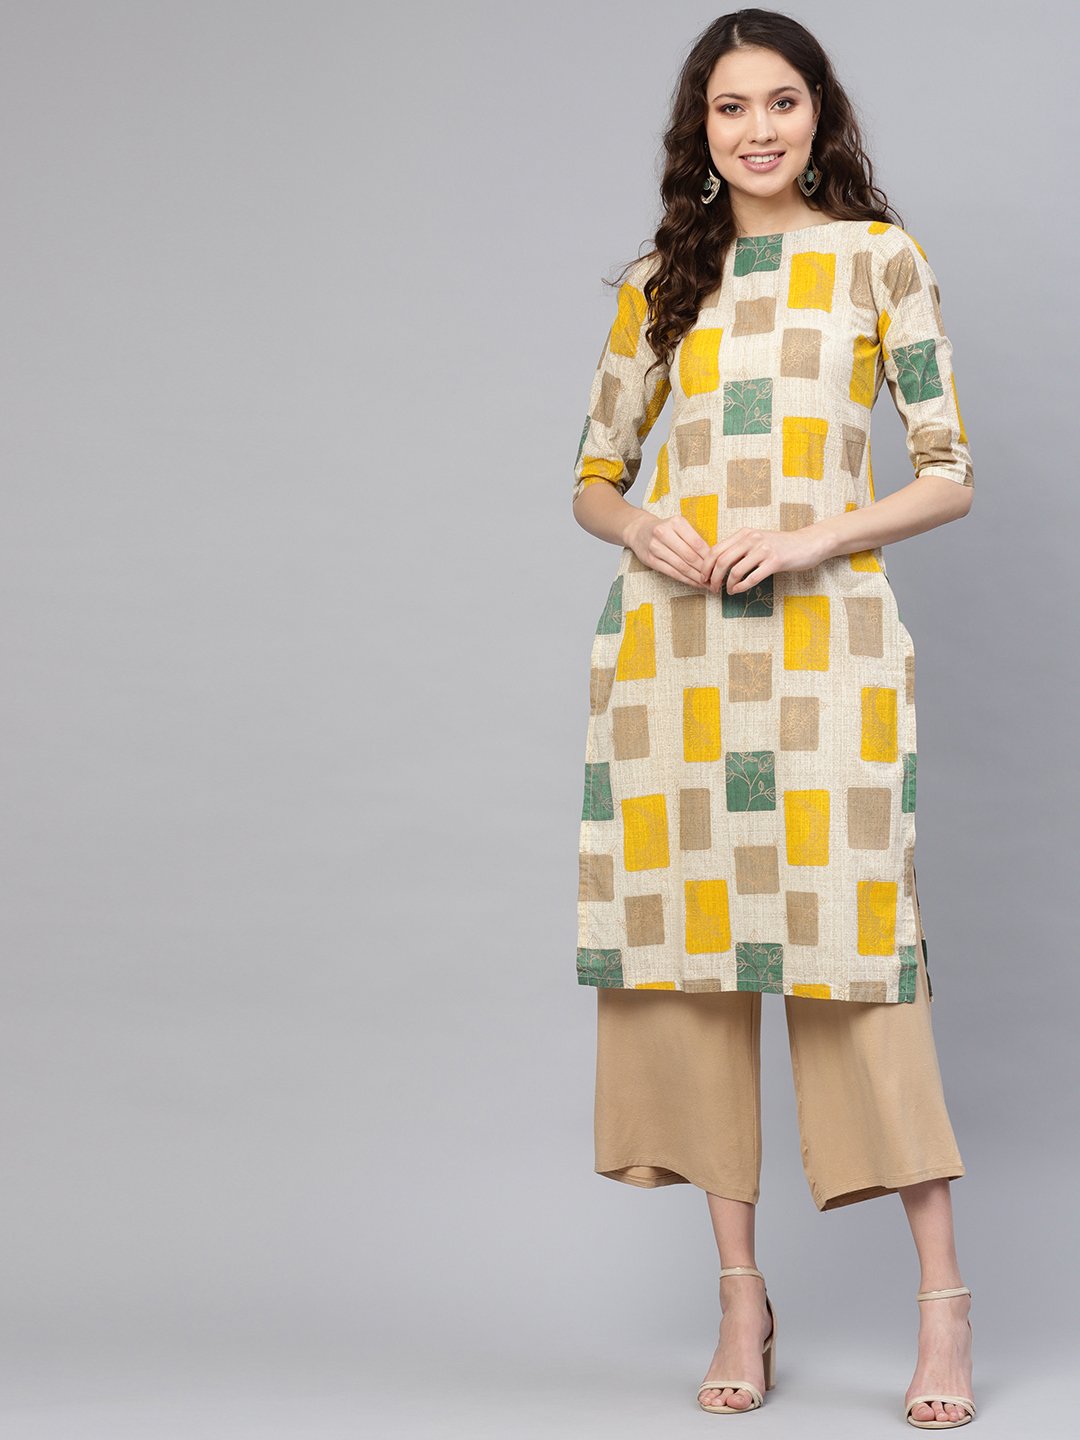 Women's Off-White & Mustard Yellow Printed Straight Kurta - Nayo Clothing